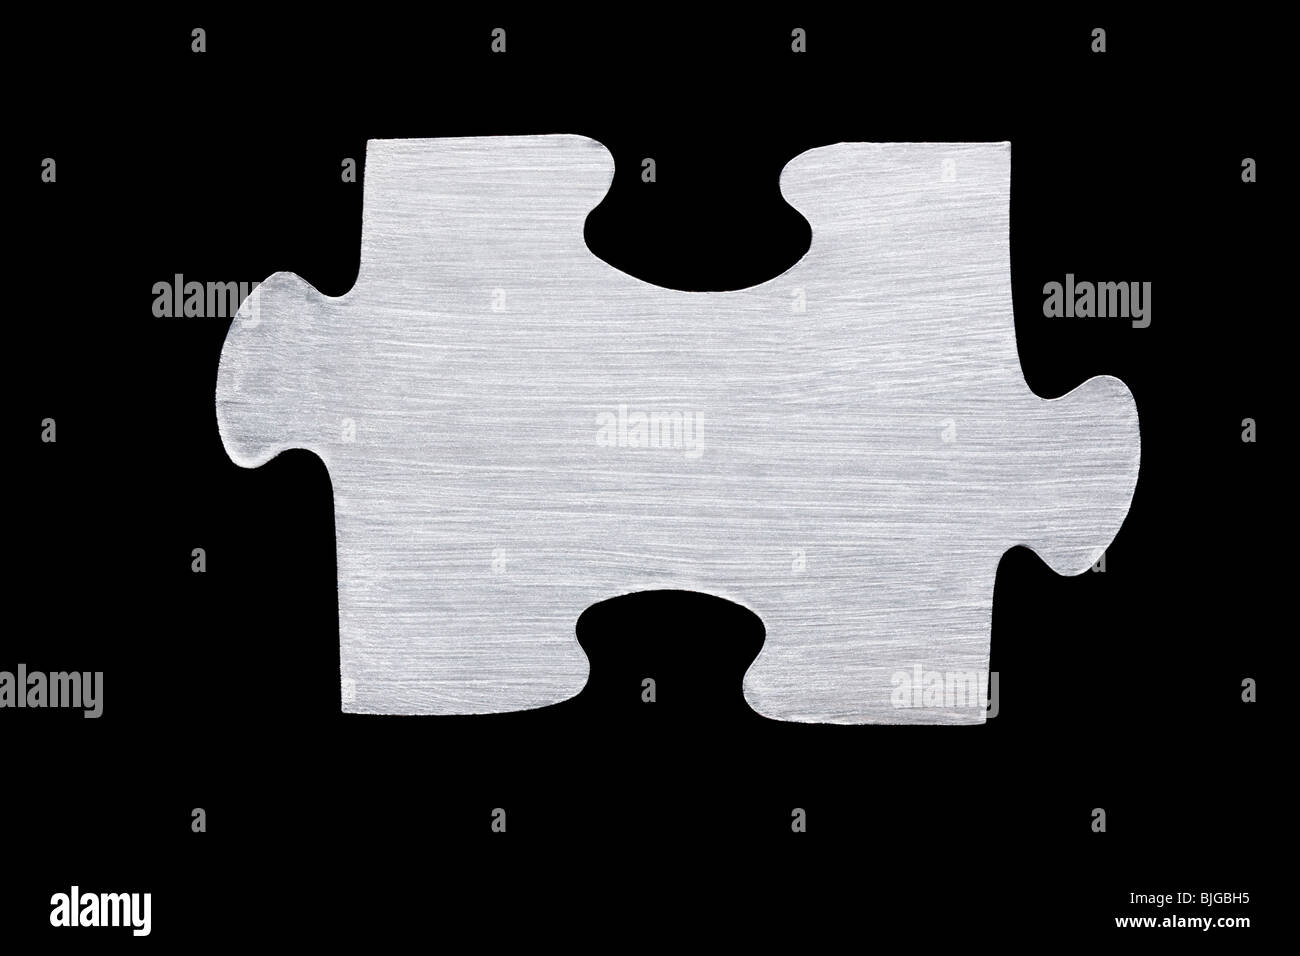 metallic puzzle piece Stock Photo